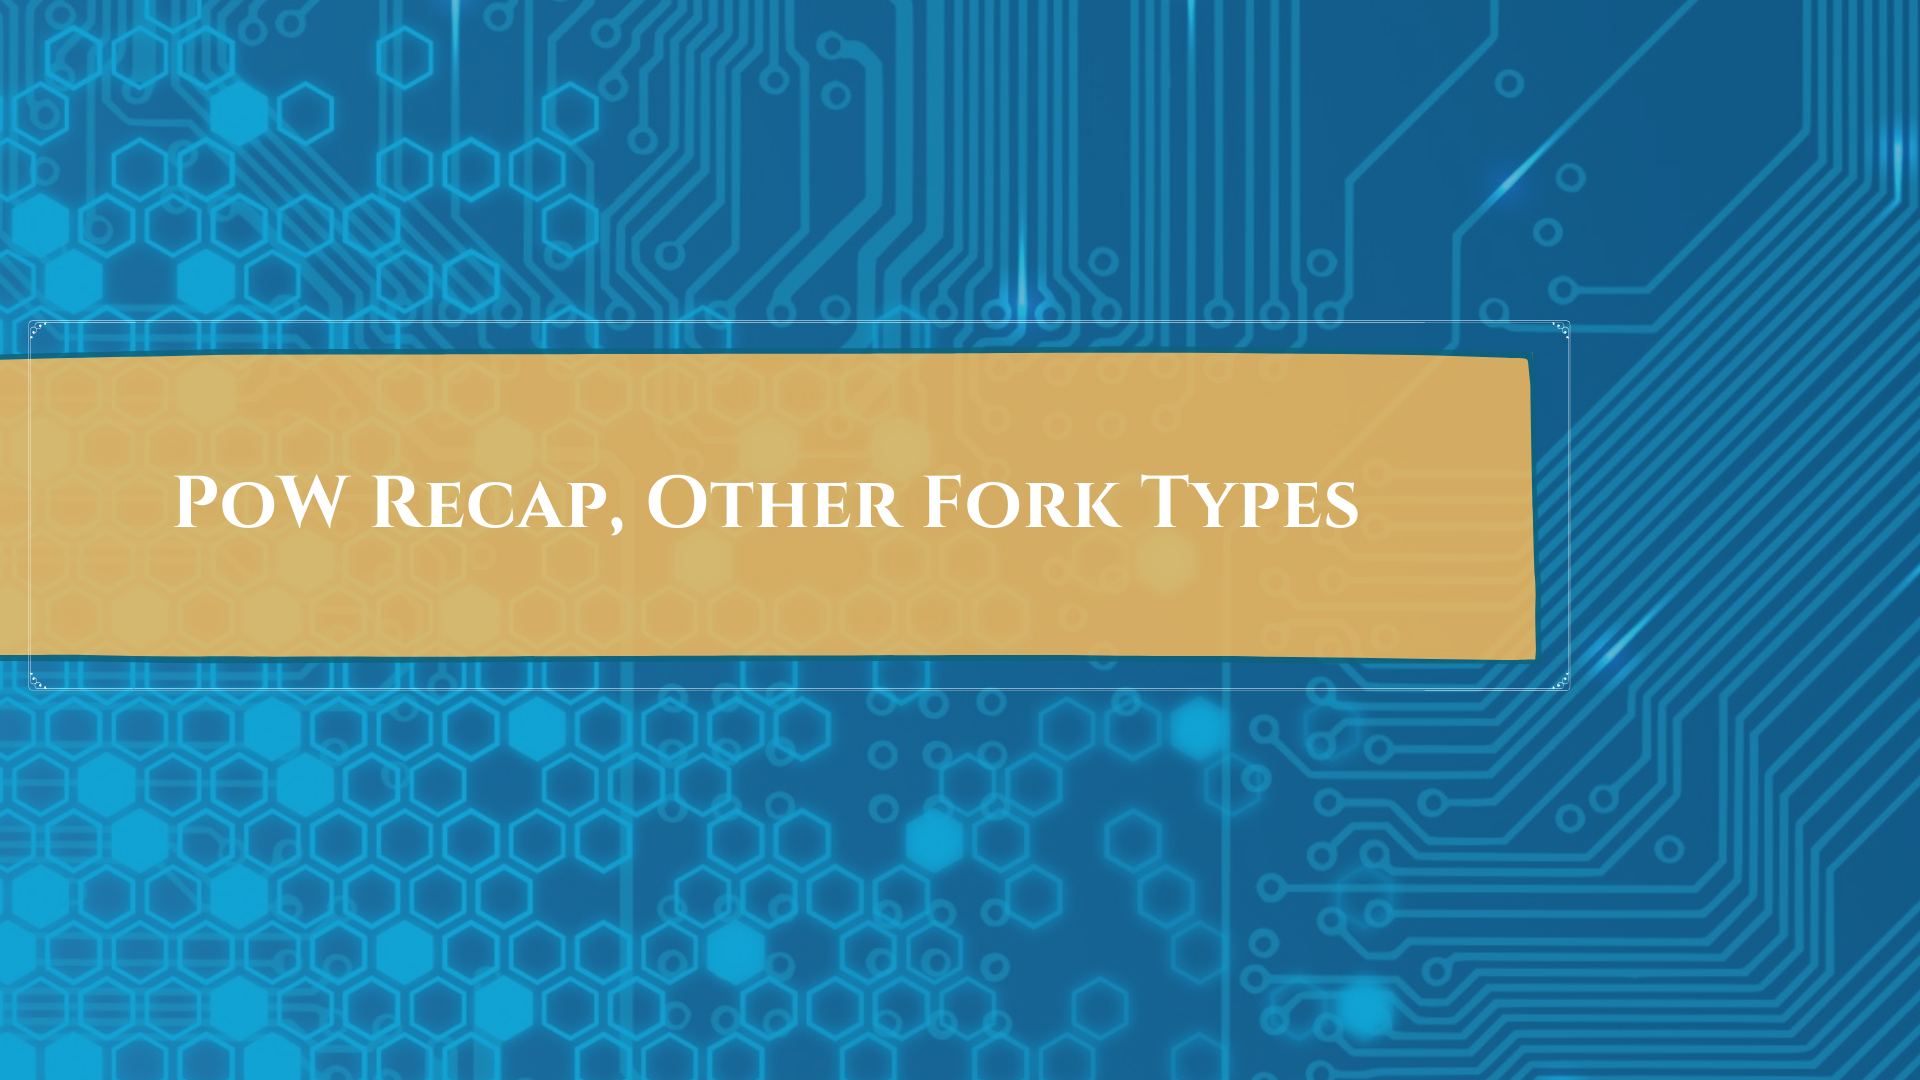 PoW Recap, Other Fork Types